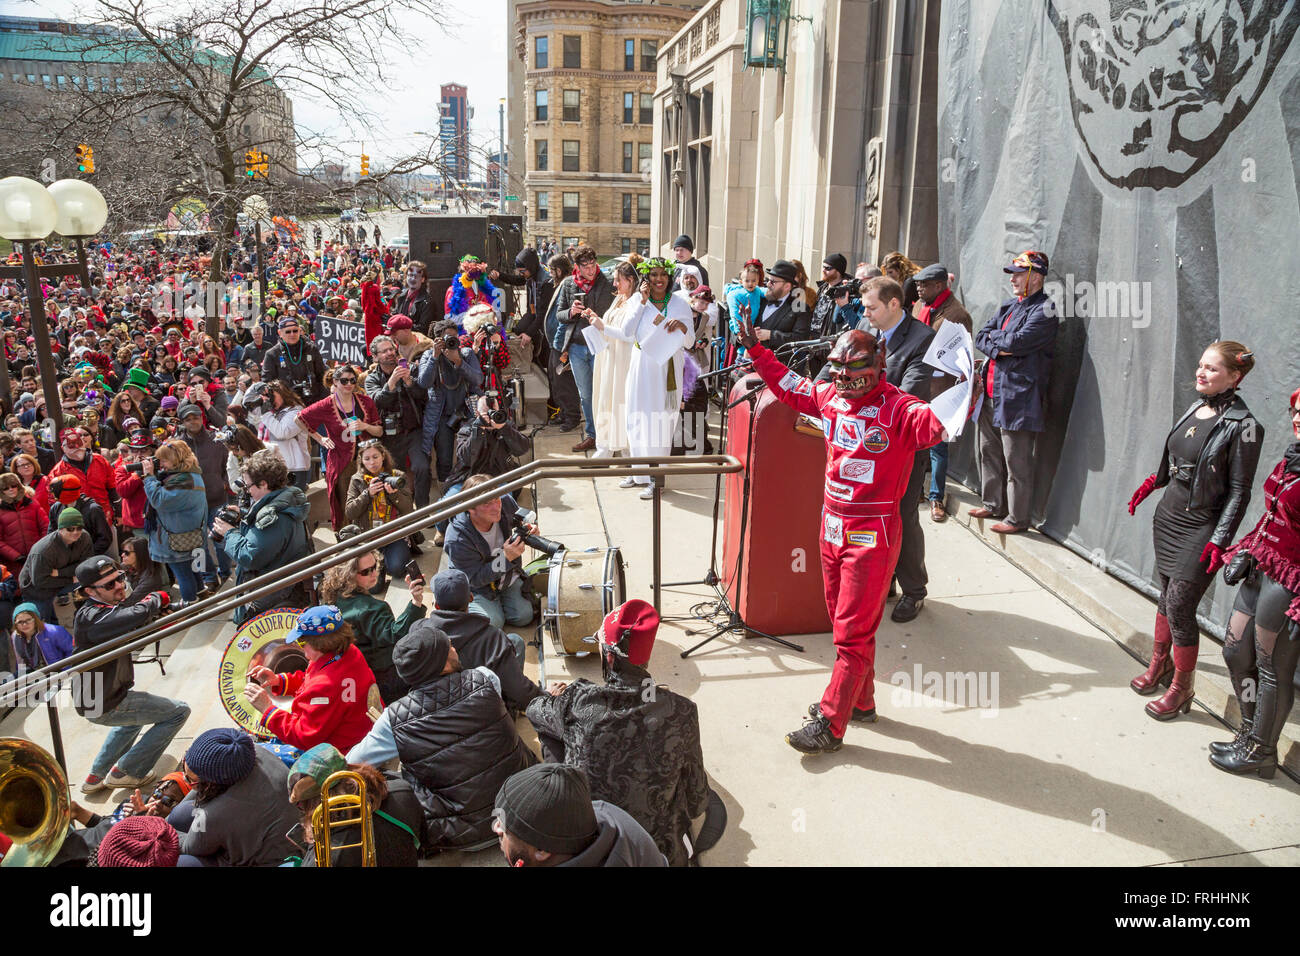 Detroit, Michigan - La Marche du Nain rouge célèbre la venue du printemps et bannit l'Nain rouge (Red Dwarf) de Detroit Banque D'Images